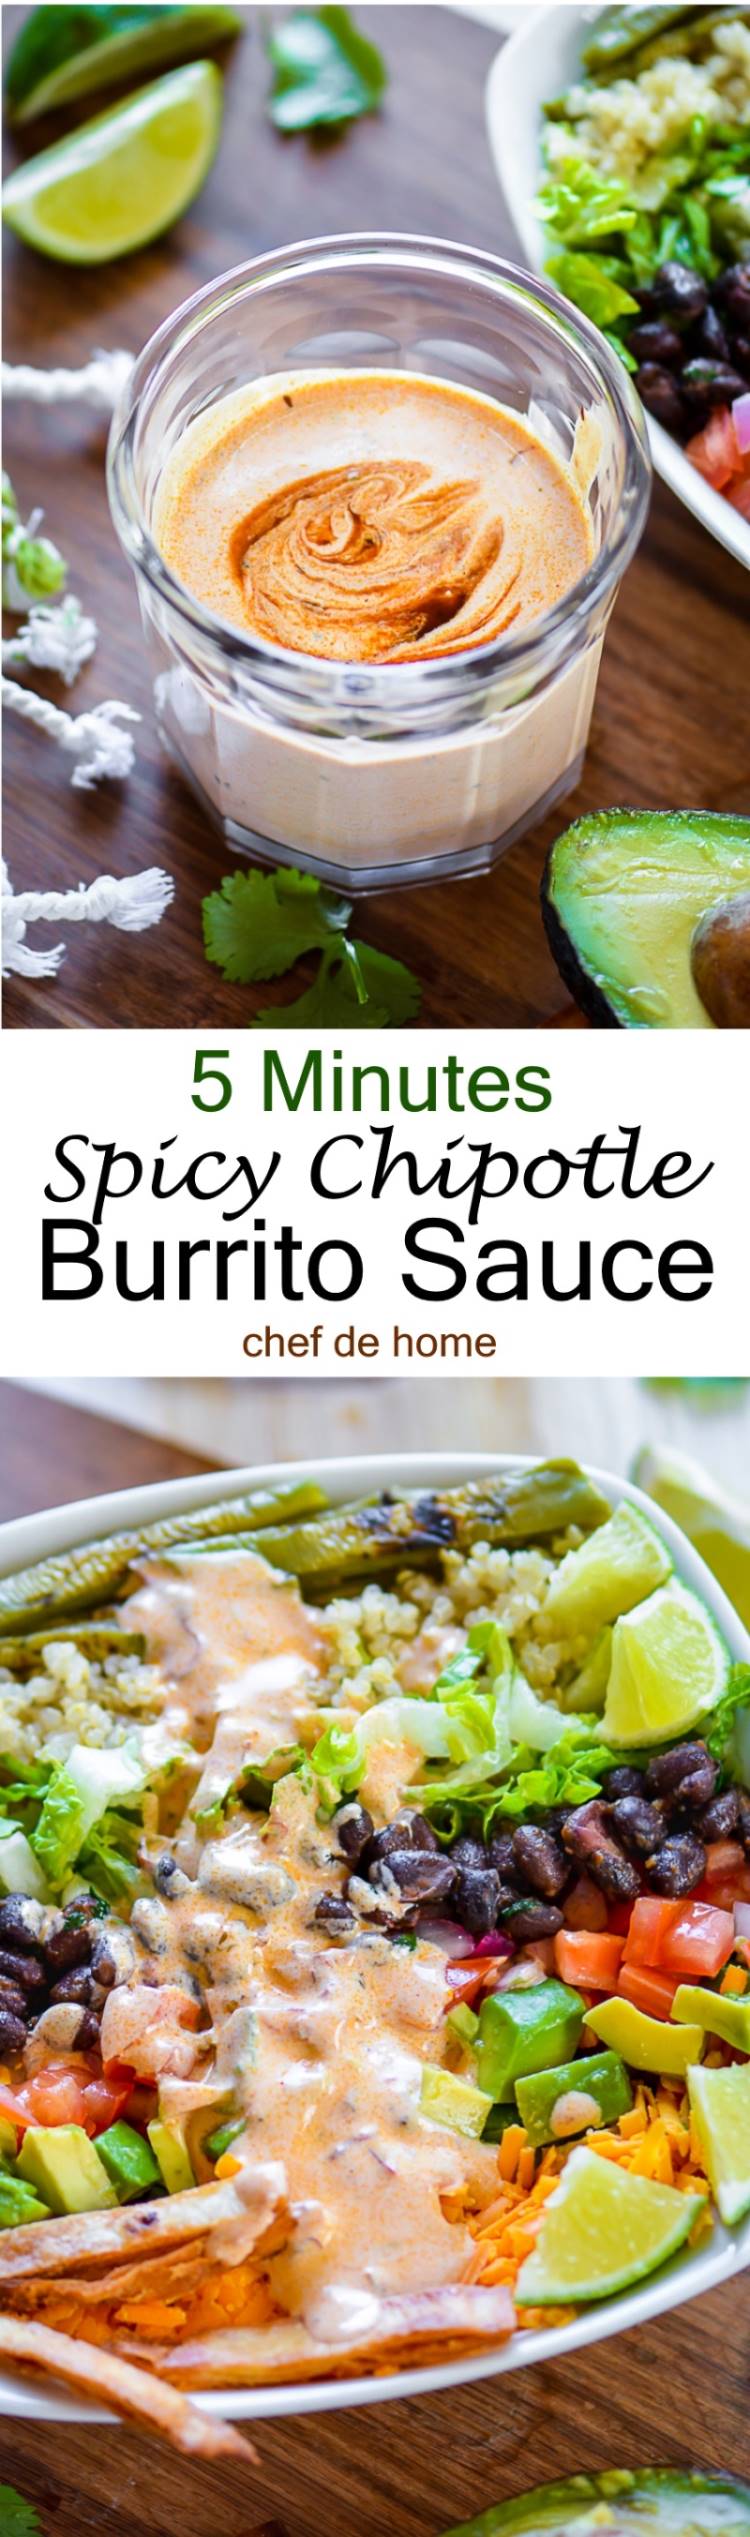 5 minutes easy Chipotle Burrito Sauce | chefdehome.com